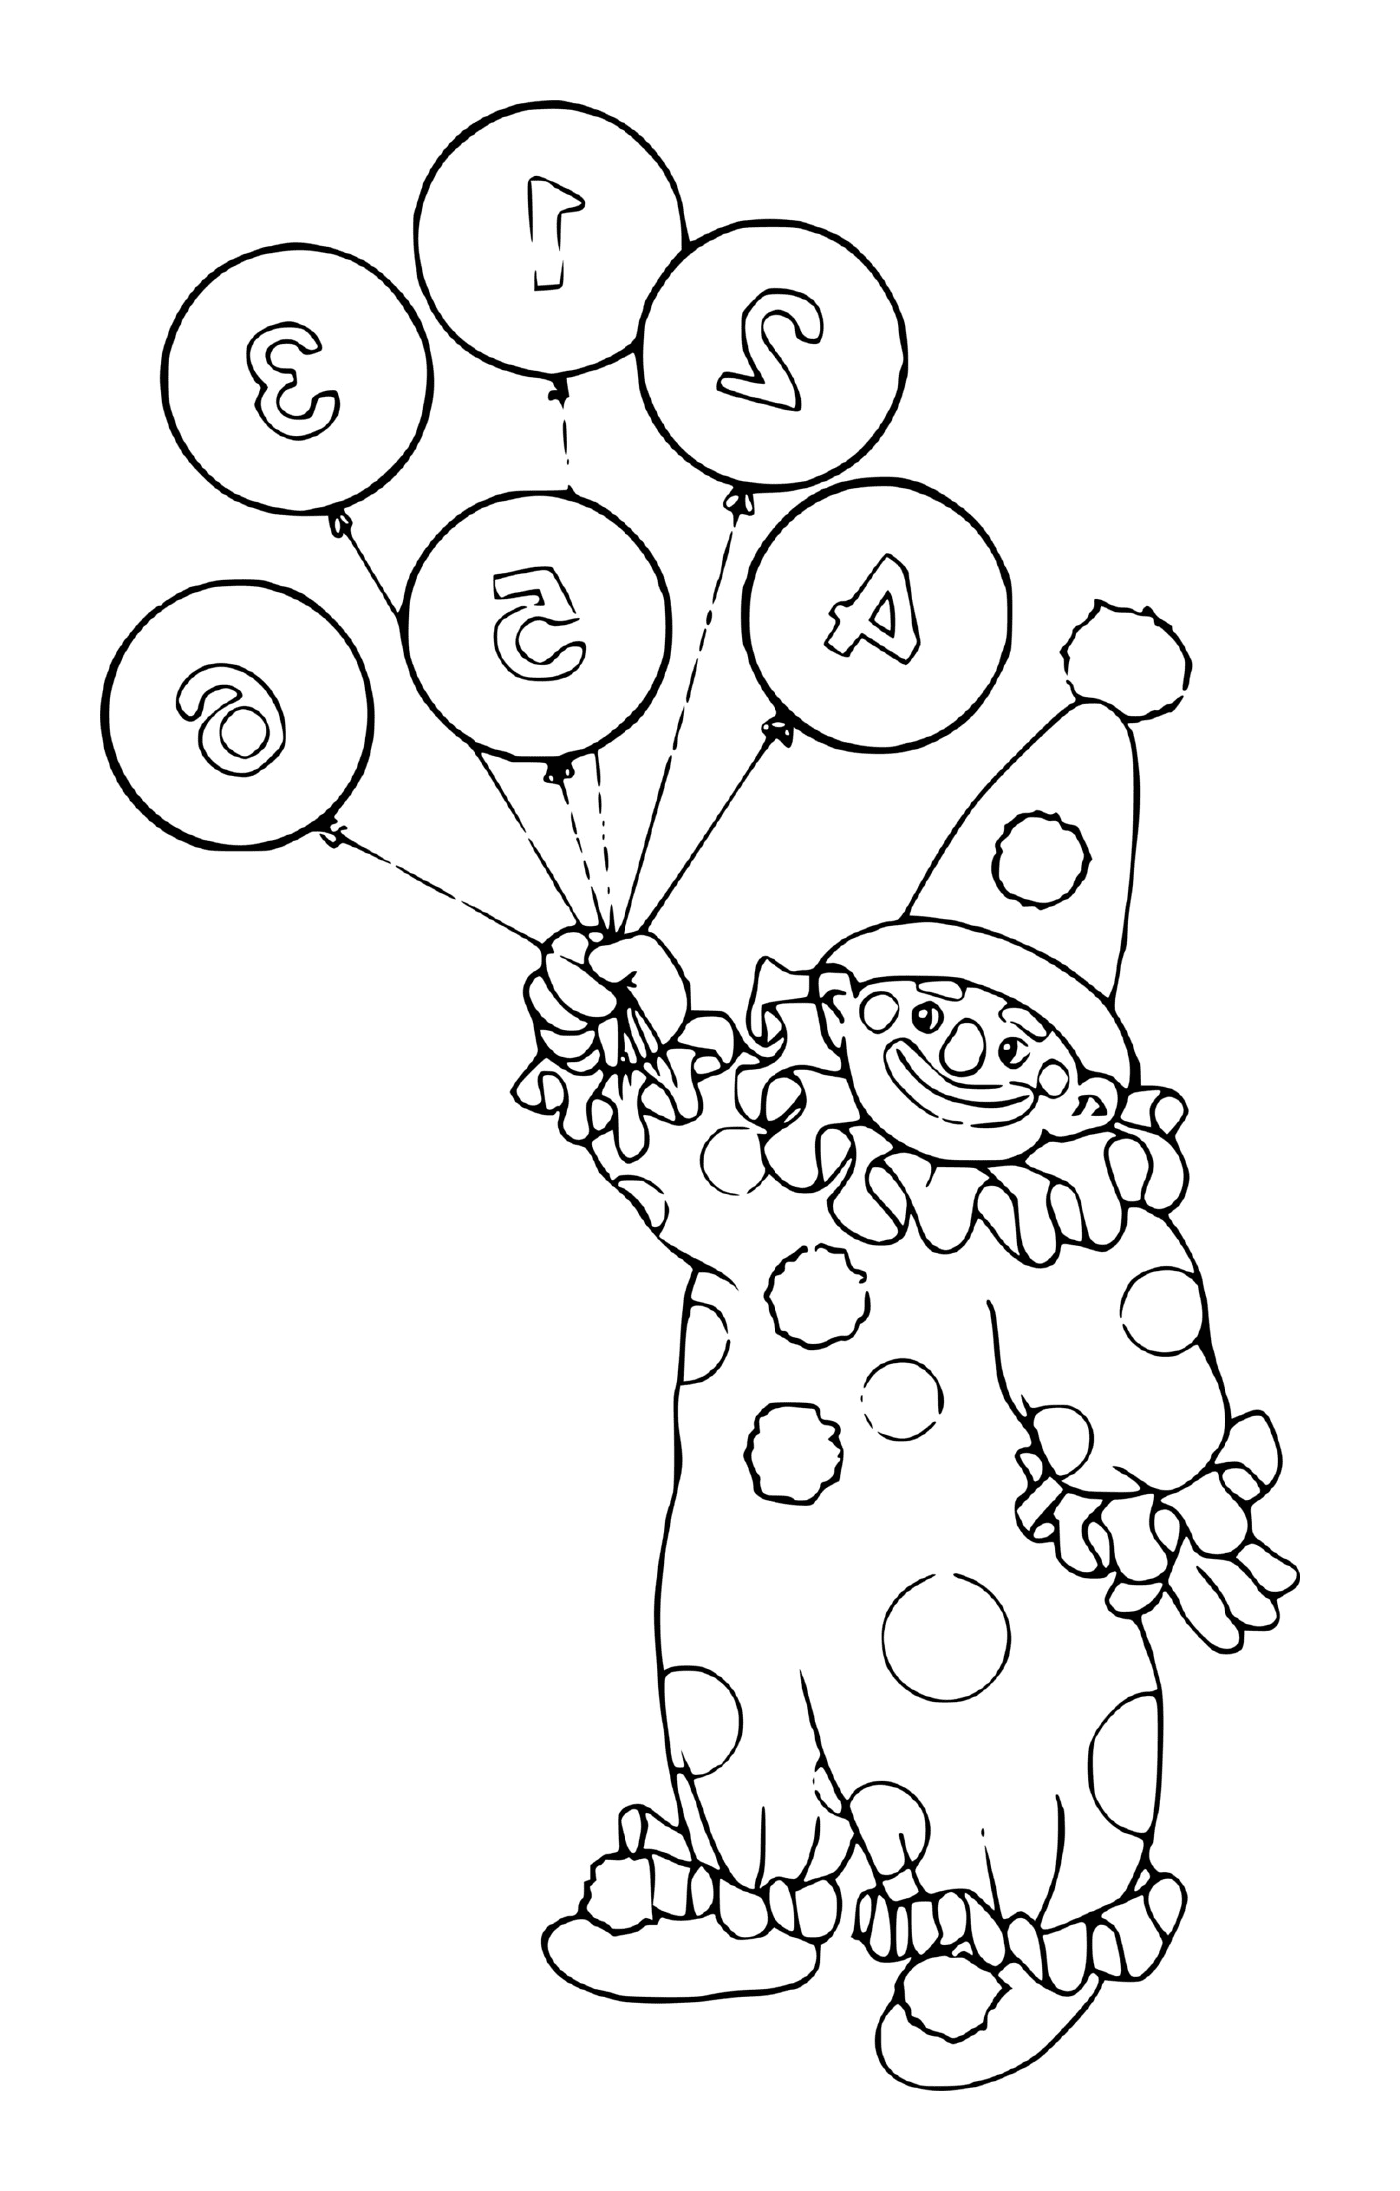  Payaso sosteniendo globos numerados 